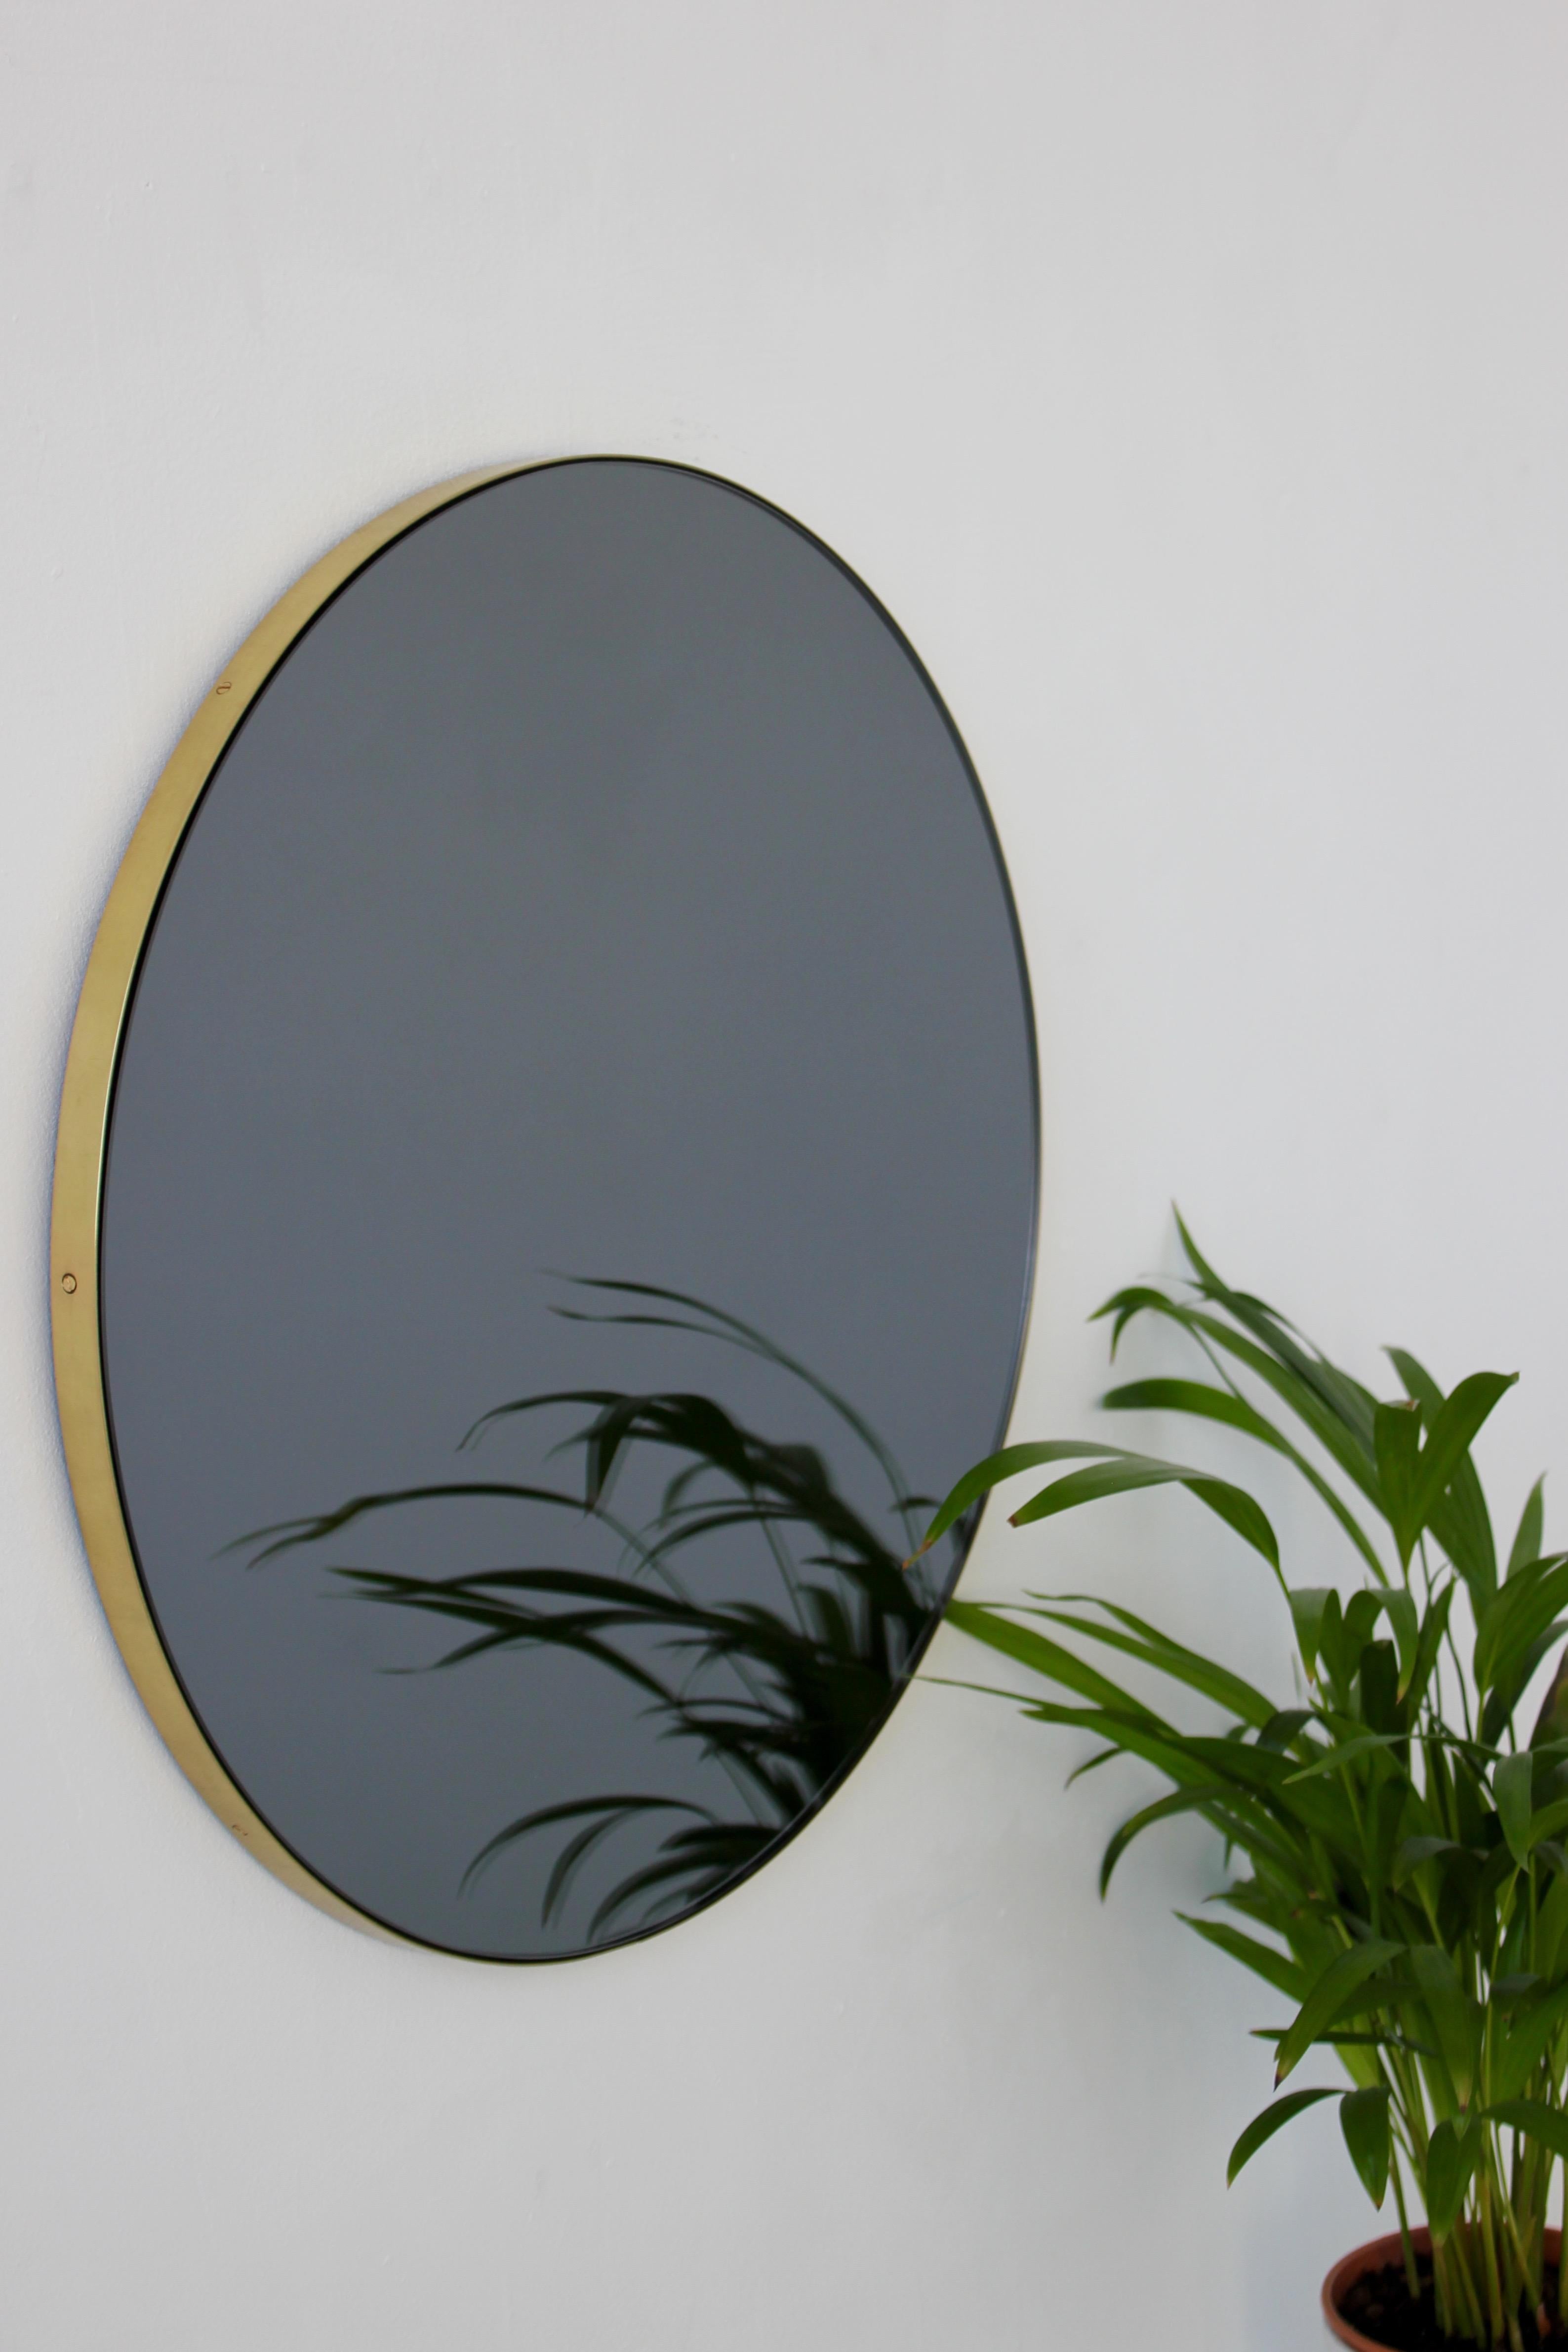 Brossé Orbis Black Tinted Round Contemporary Mirror with a Brass Frame, Medium (Miroir contemporain rond teinté noir avec cadre en laiton) en vente